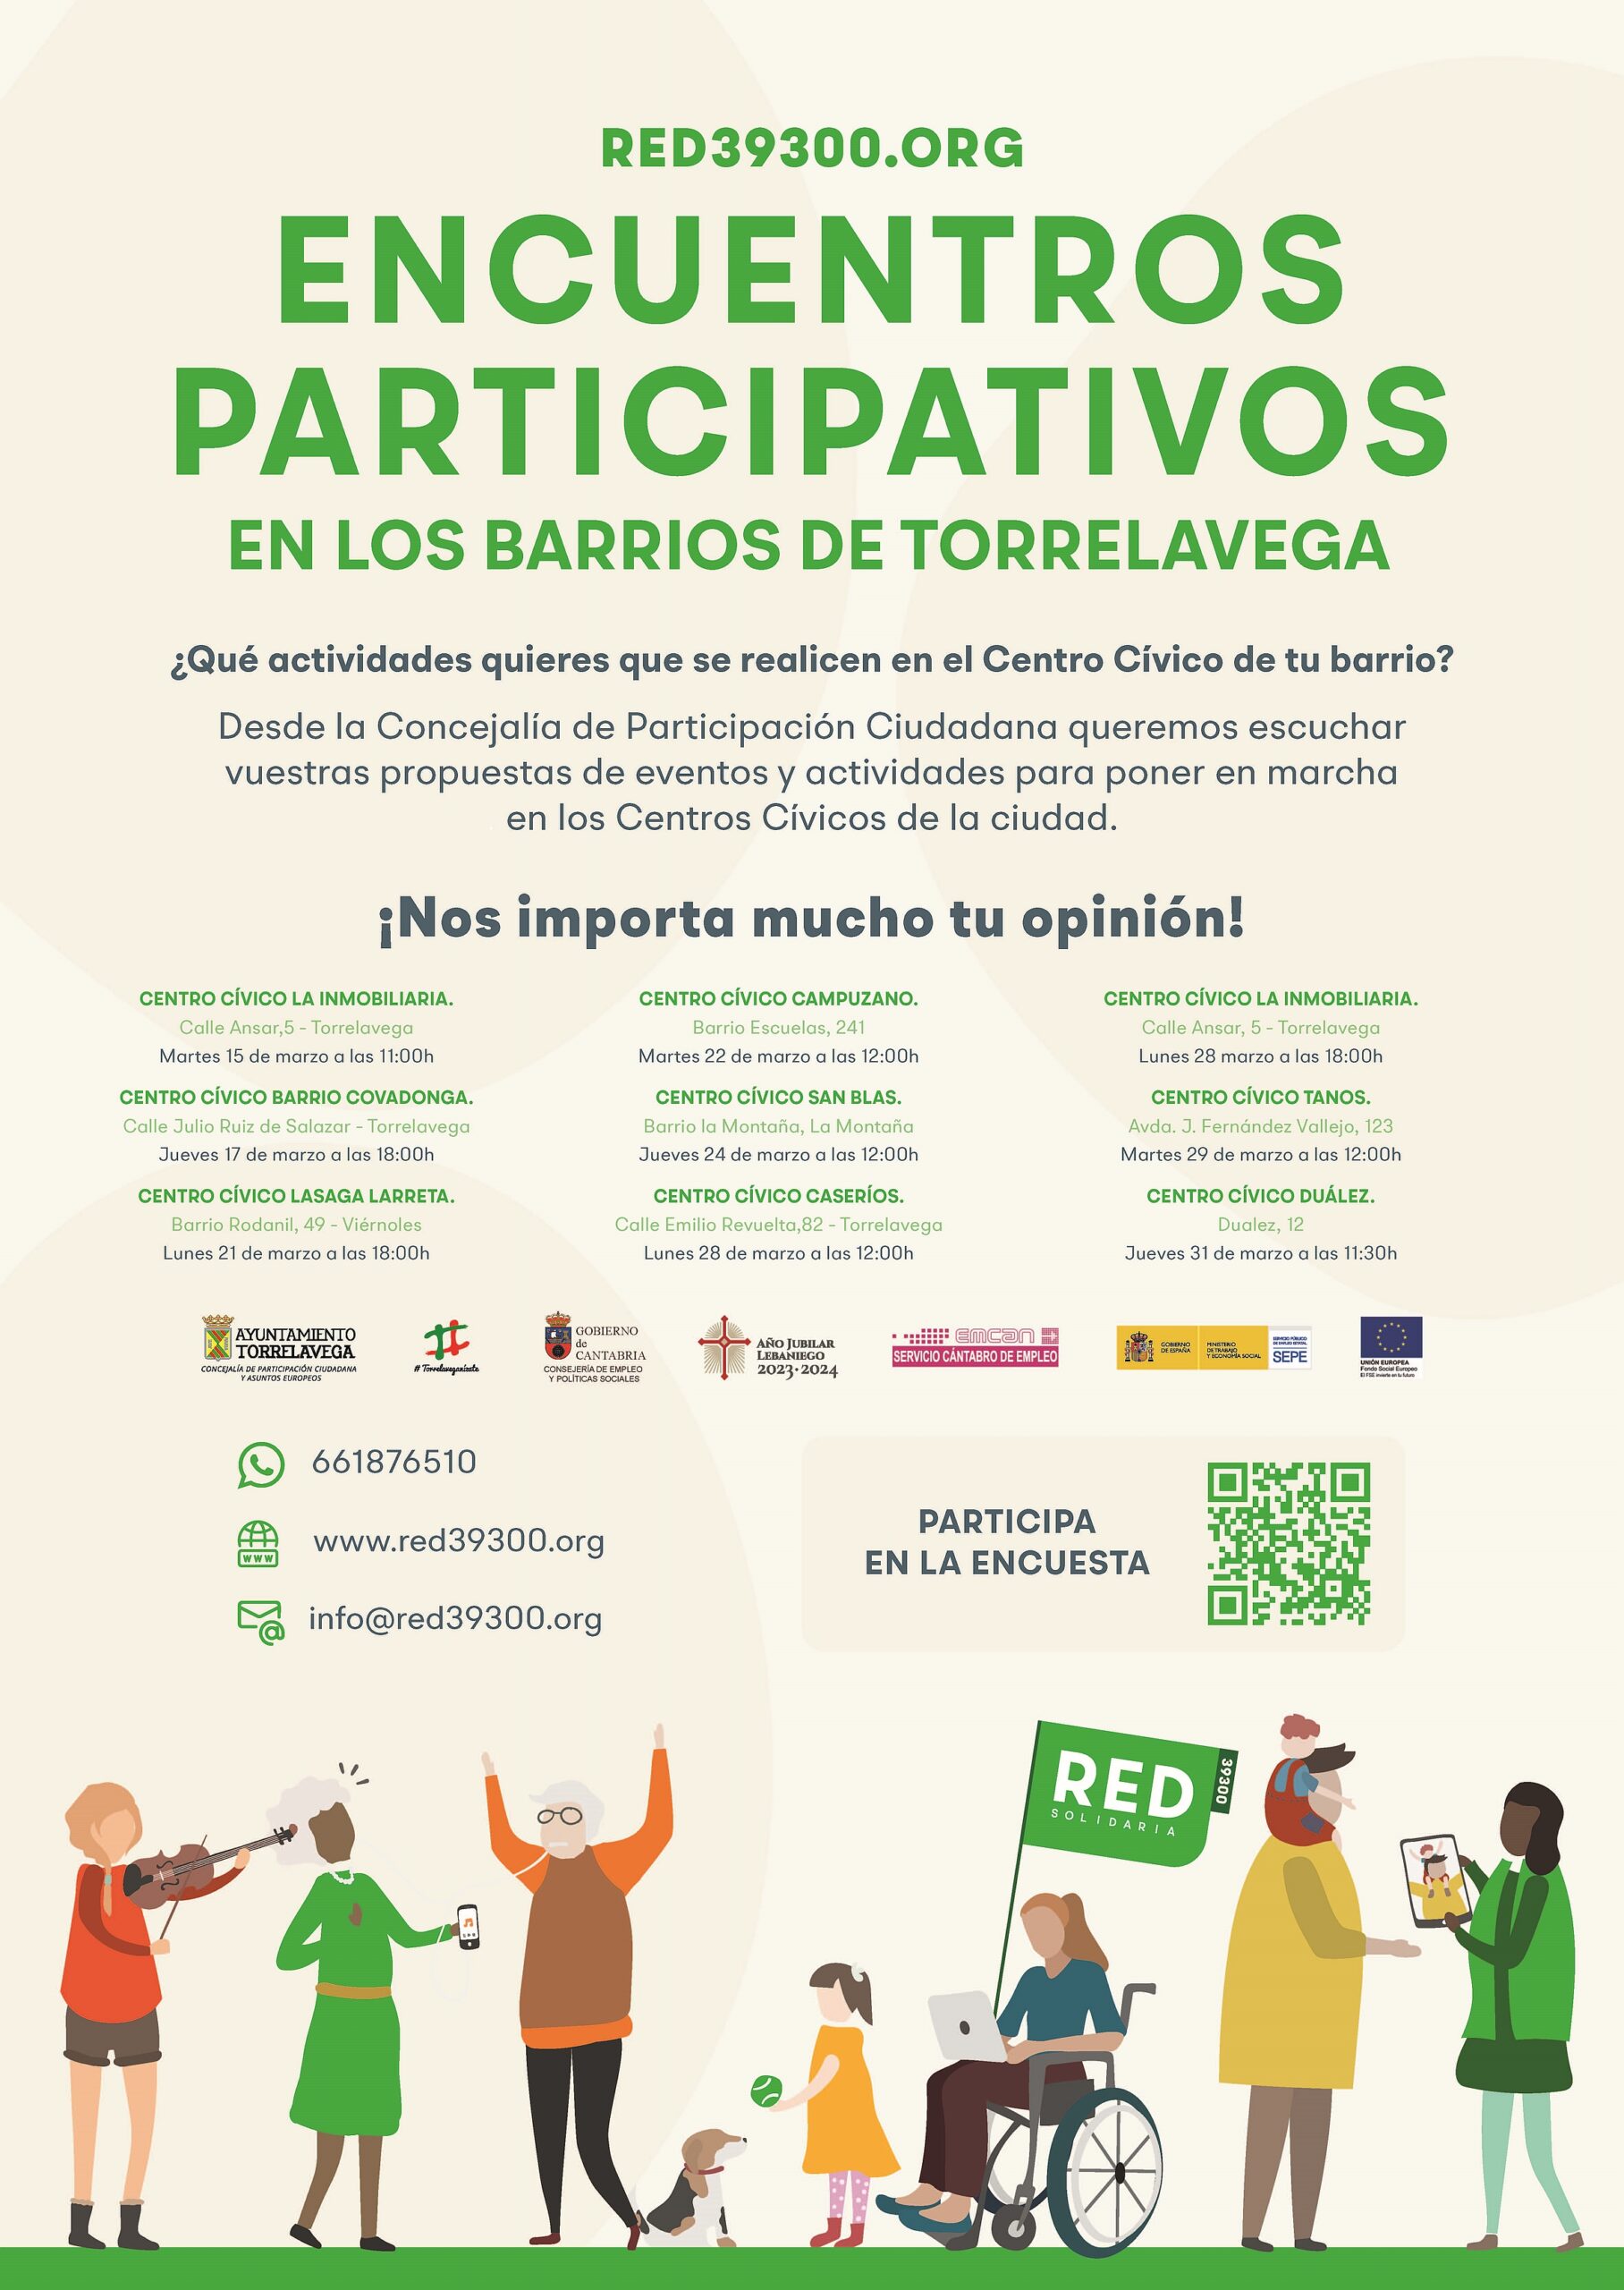  Torrelavega pone en marcha Encuentros Participativos para reactivar el tejido asociativo del municipio